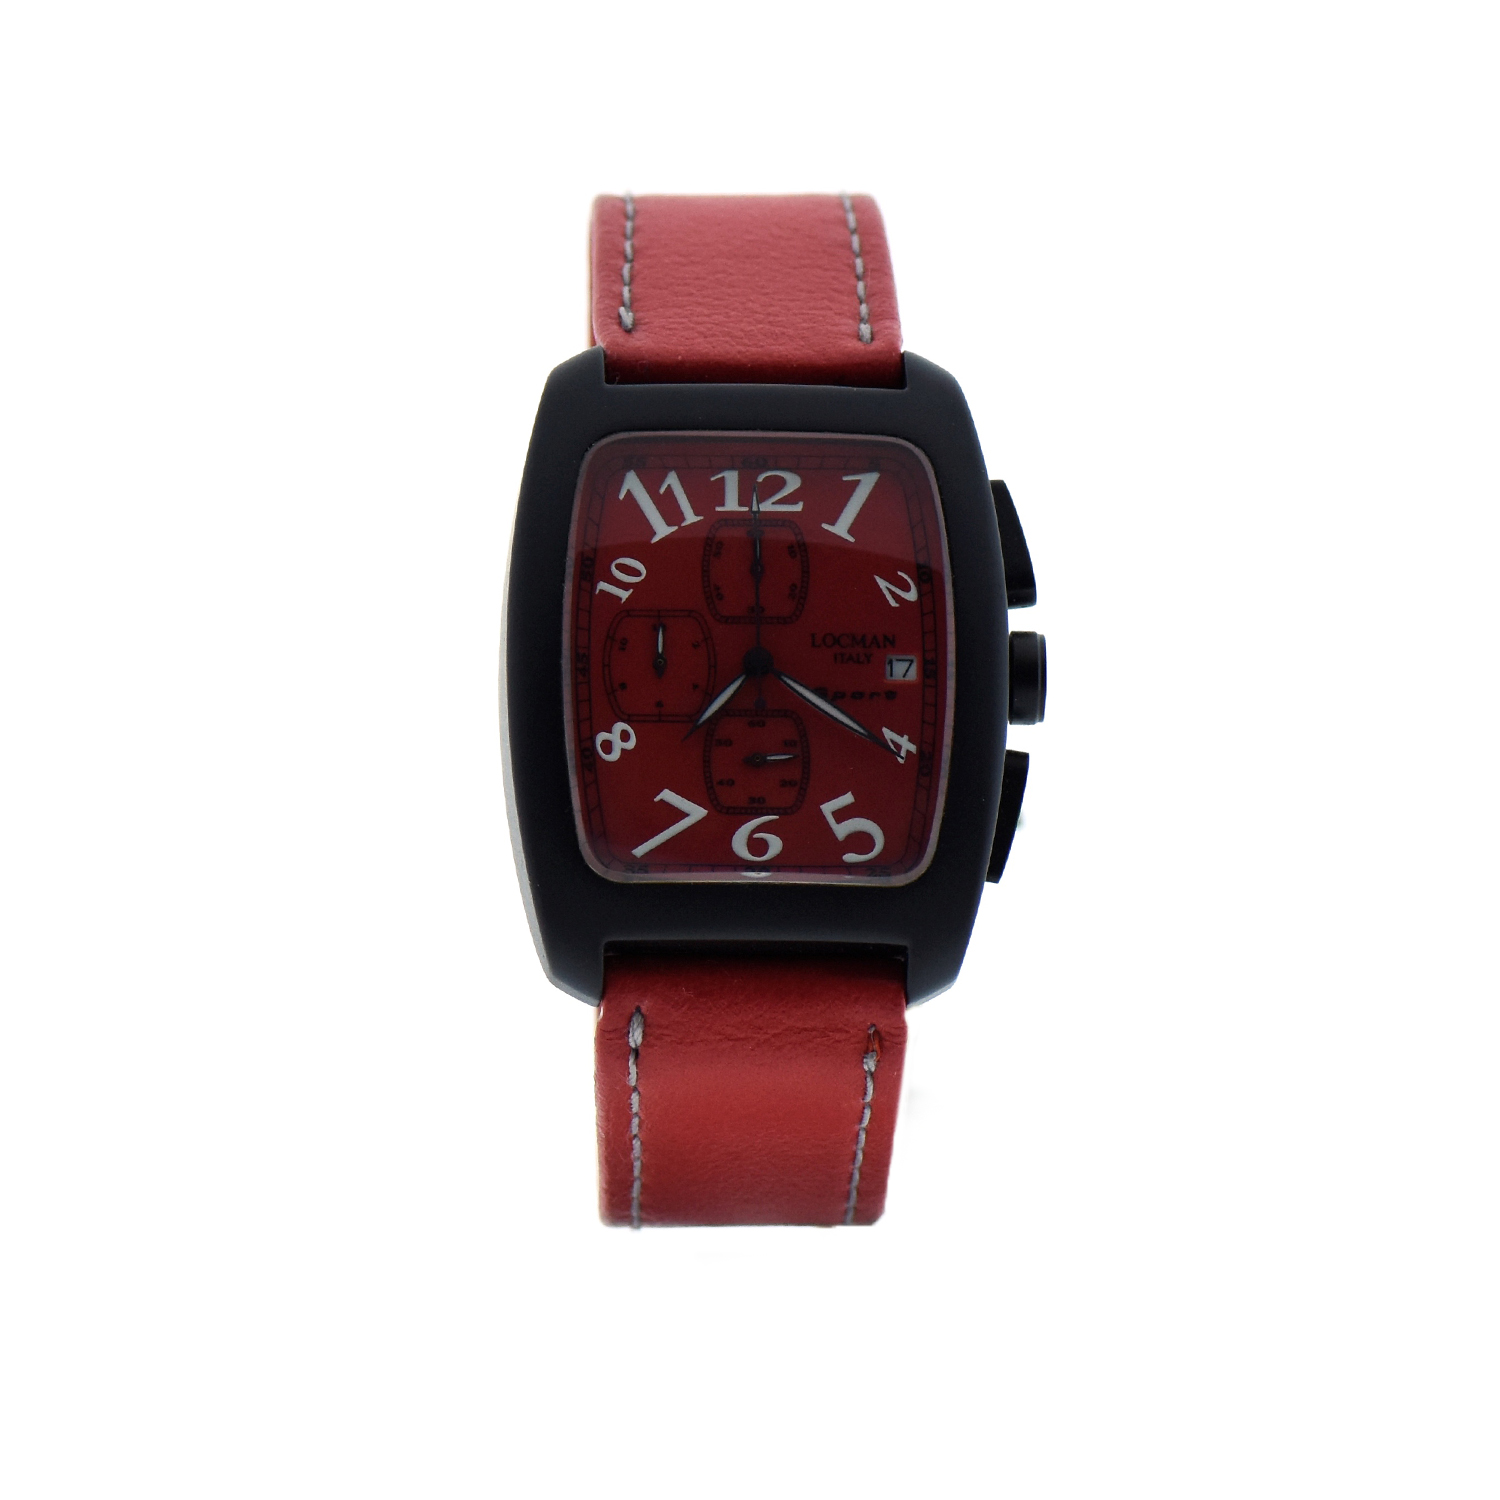 Orologio Locman modello Sport cronografo datario cassa alluminio cinturino pelle rosso